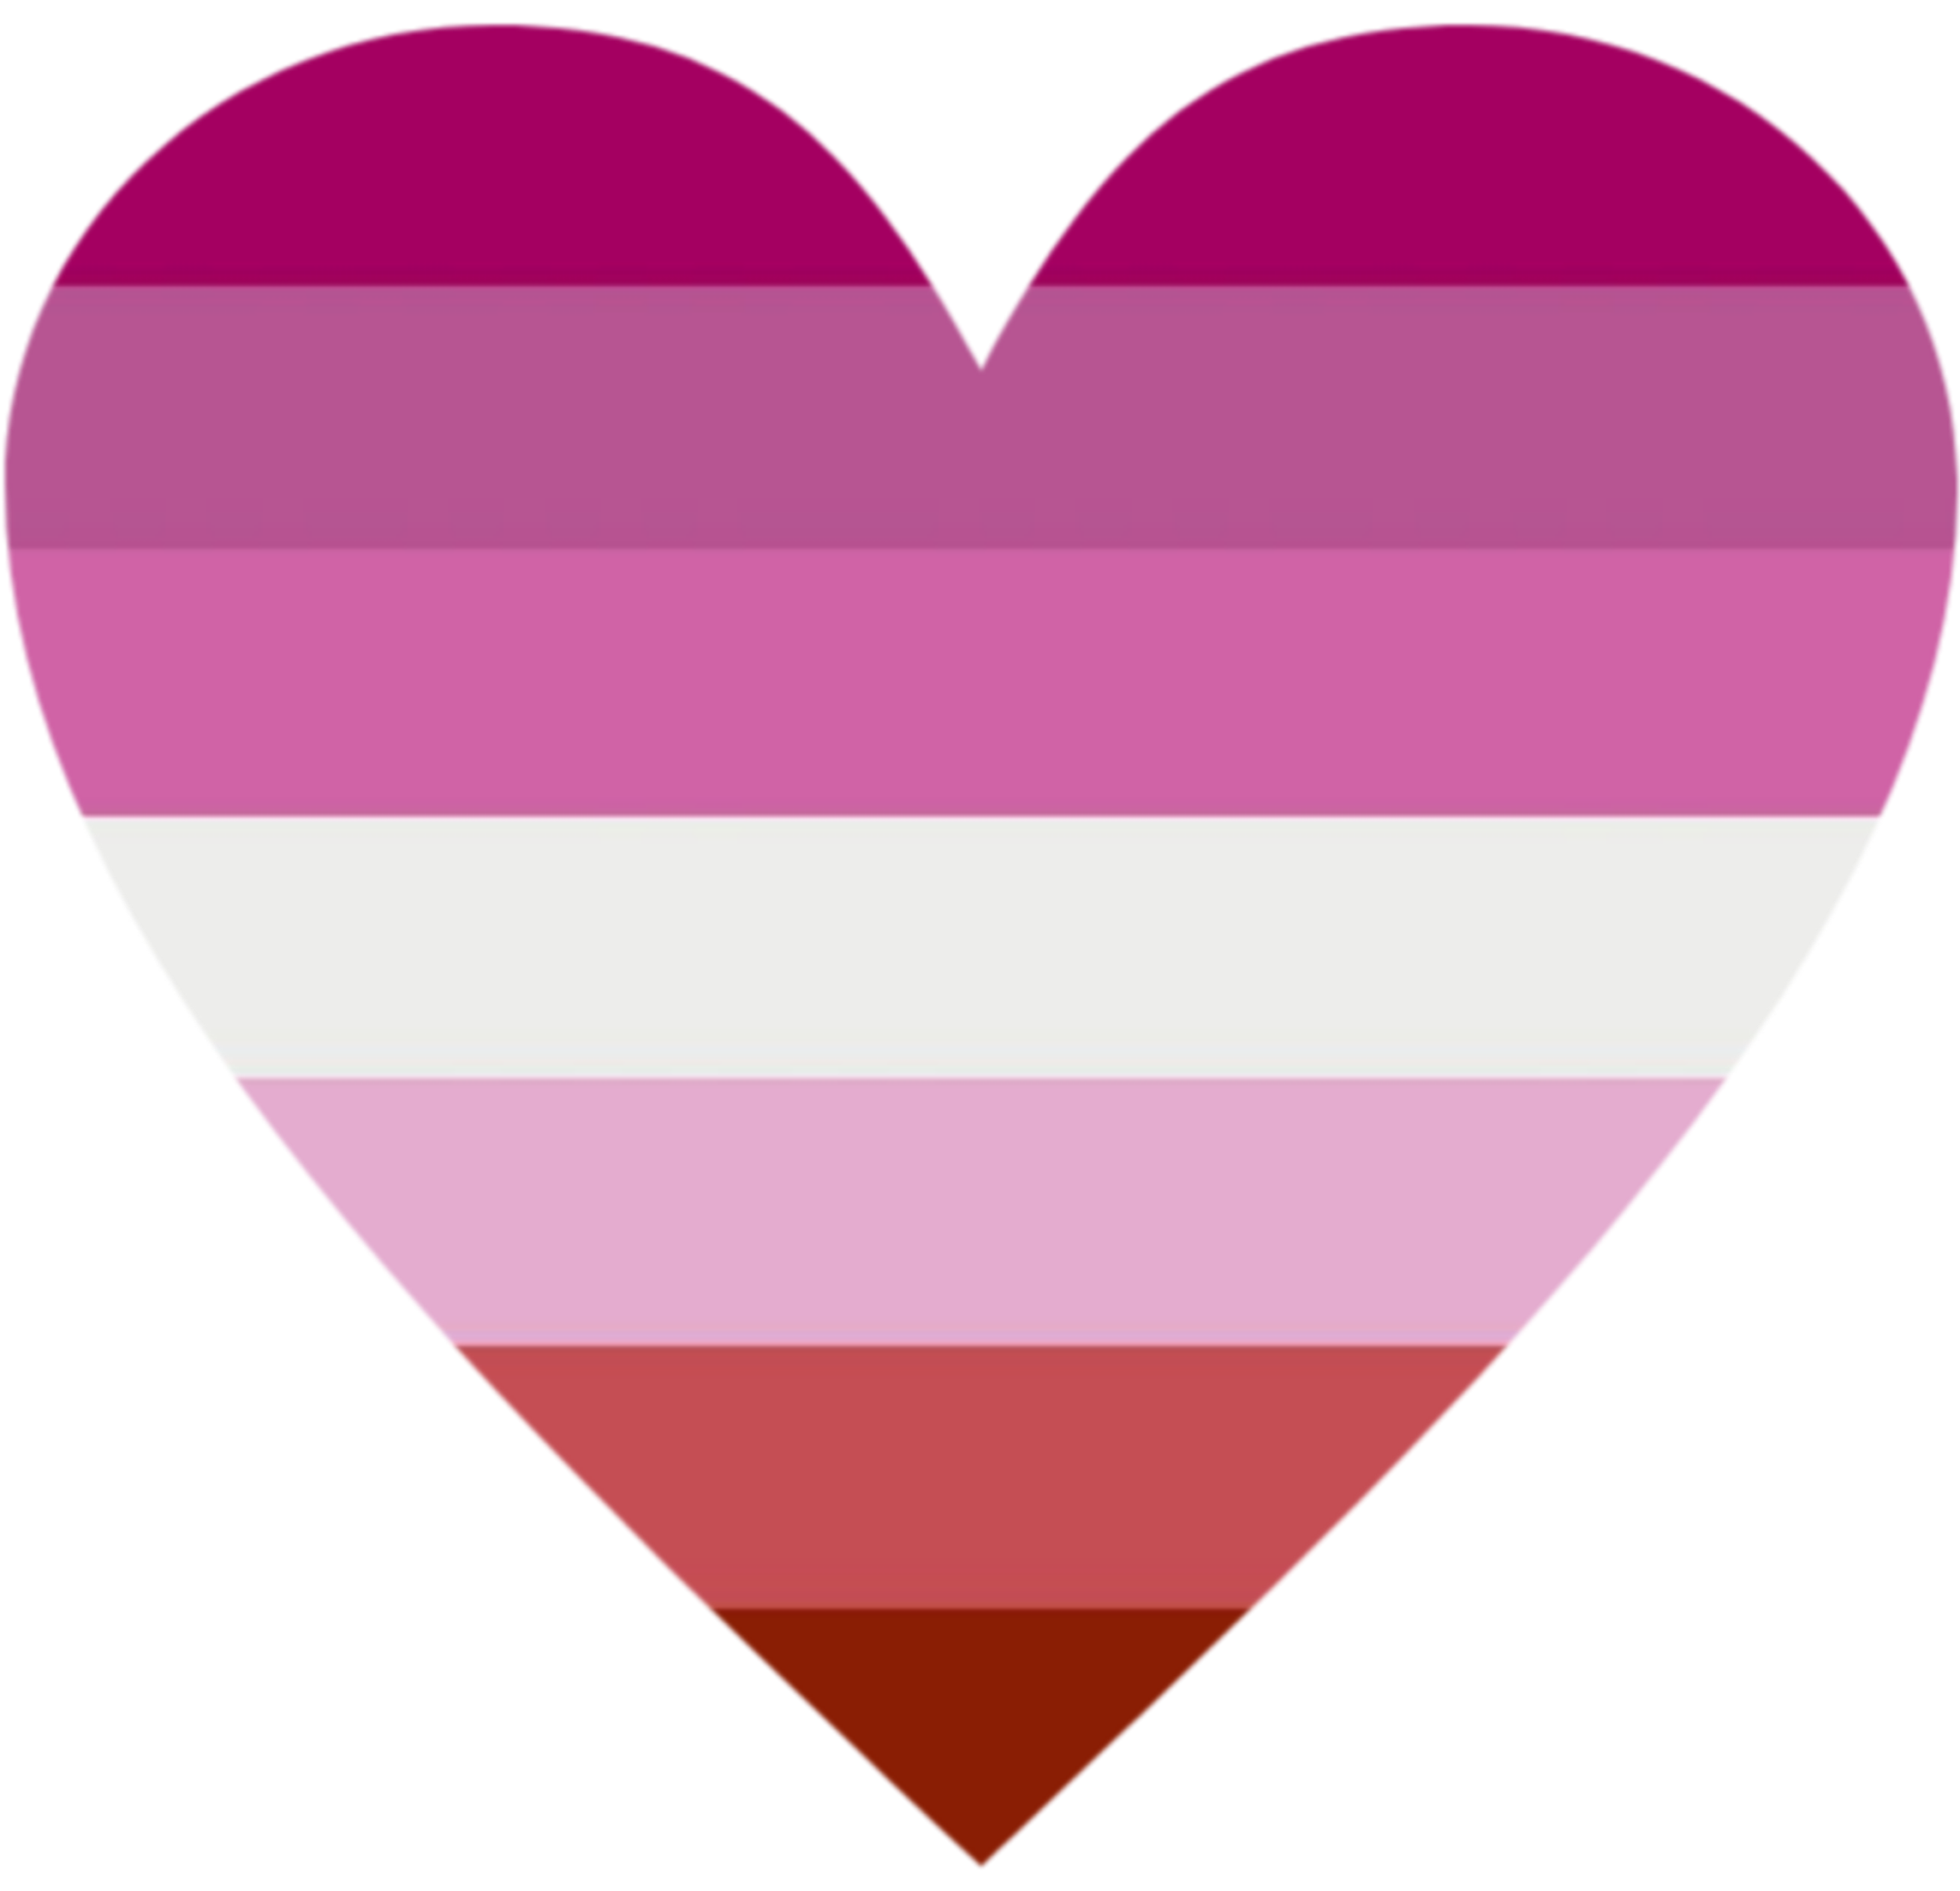 Lesbian heart. Сердечко среднее. Сердце флаг. Флаг лесбиянство.